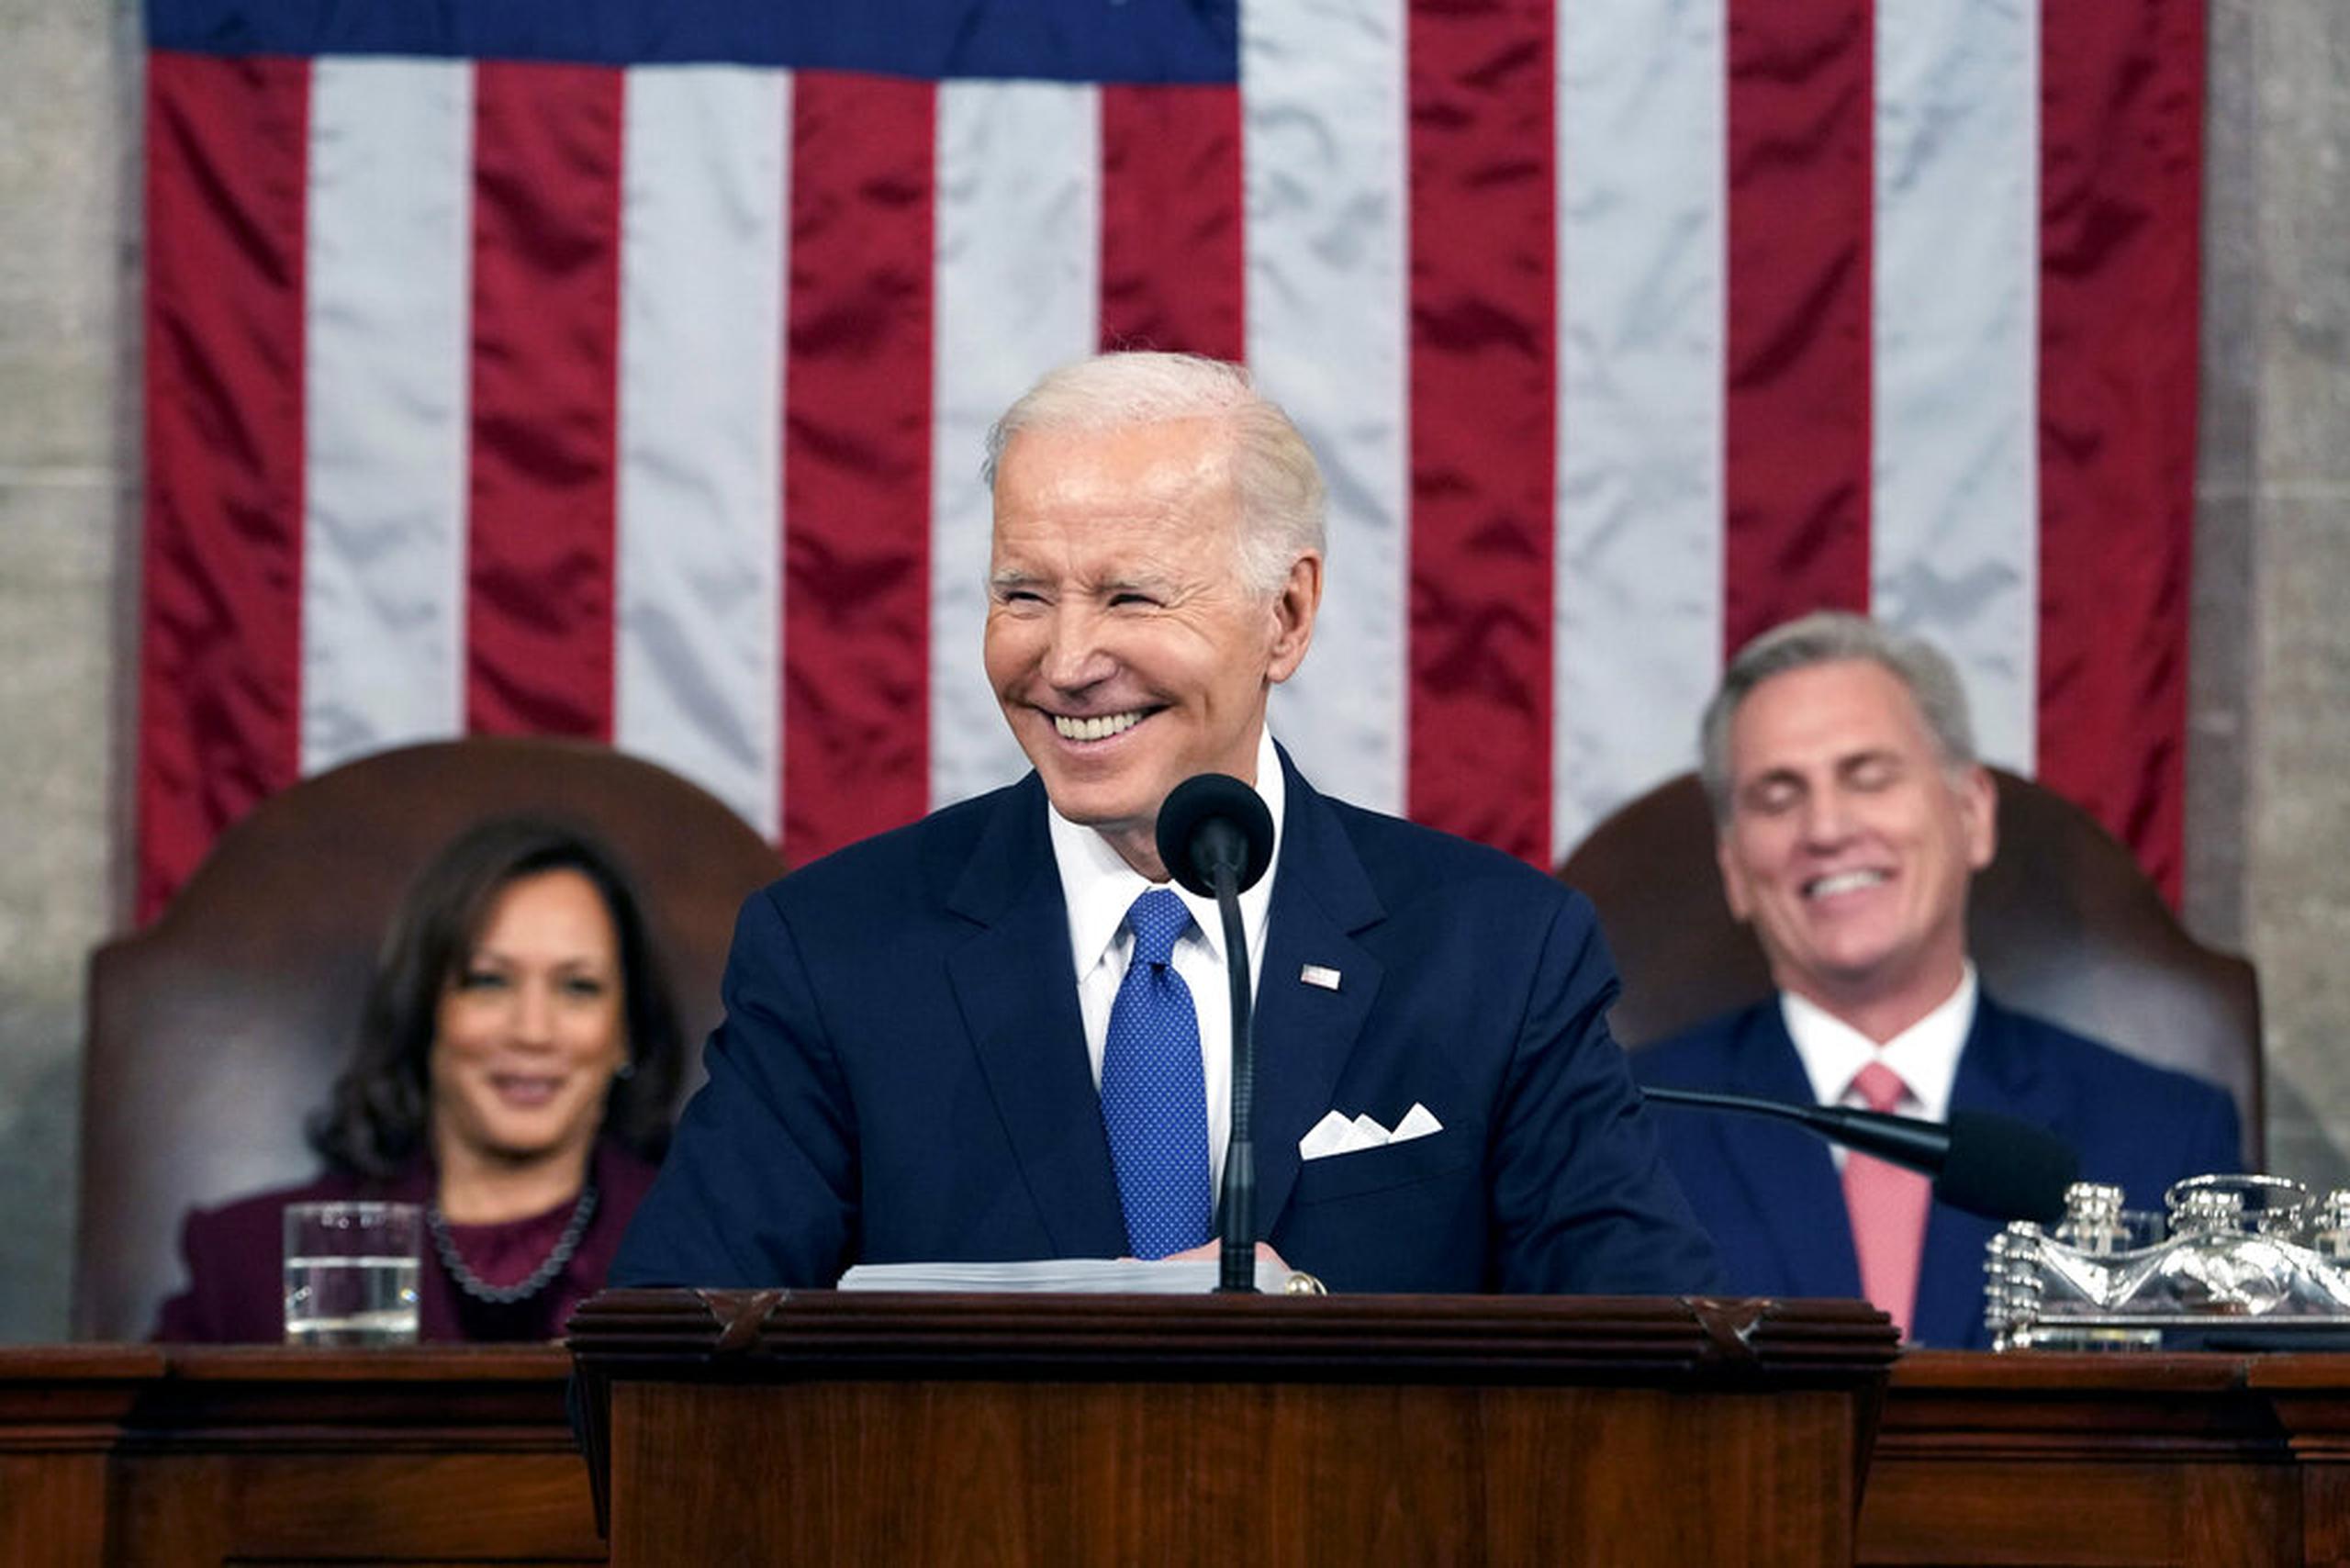 “La historia de Estados Unidos es una historia de progreso y resiliencia”, dijo Biden, que destacó la creación récord de empleo durante su mandato, mientras el país emerge de la pandemia de COVID-19.